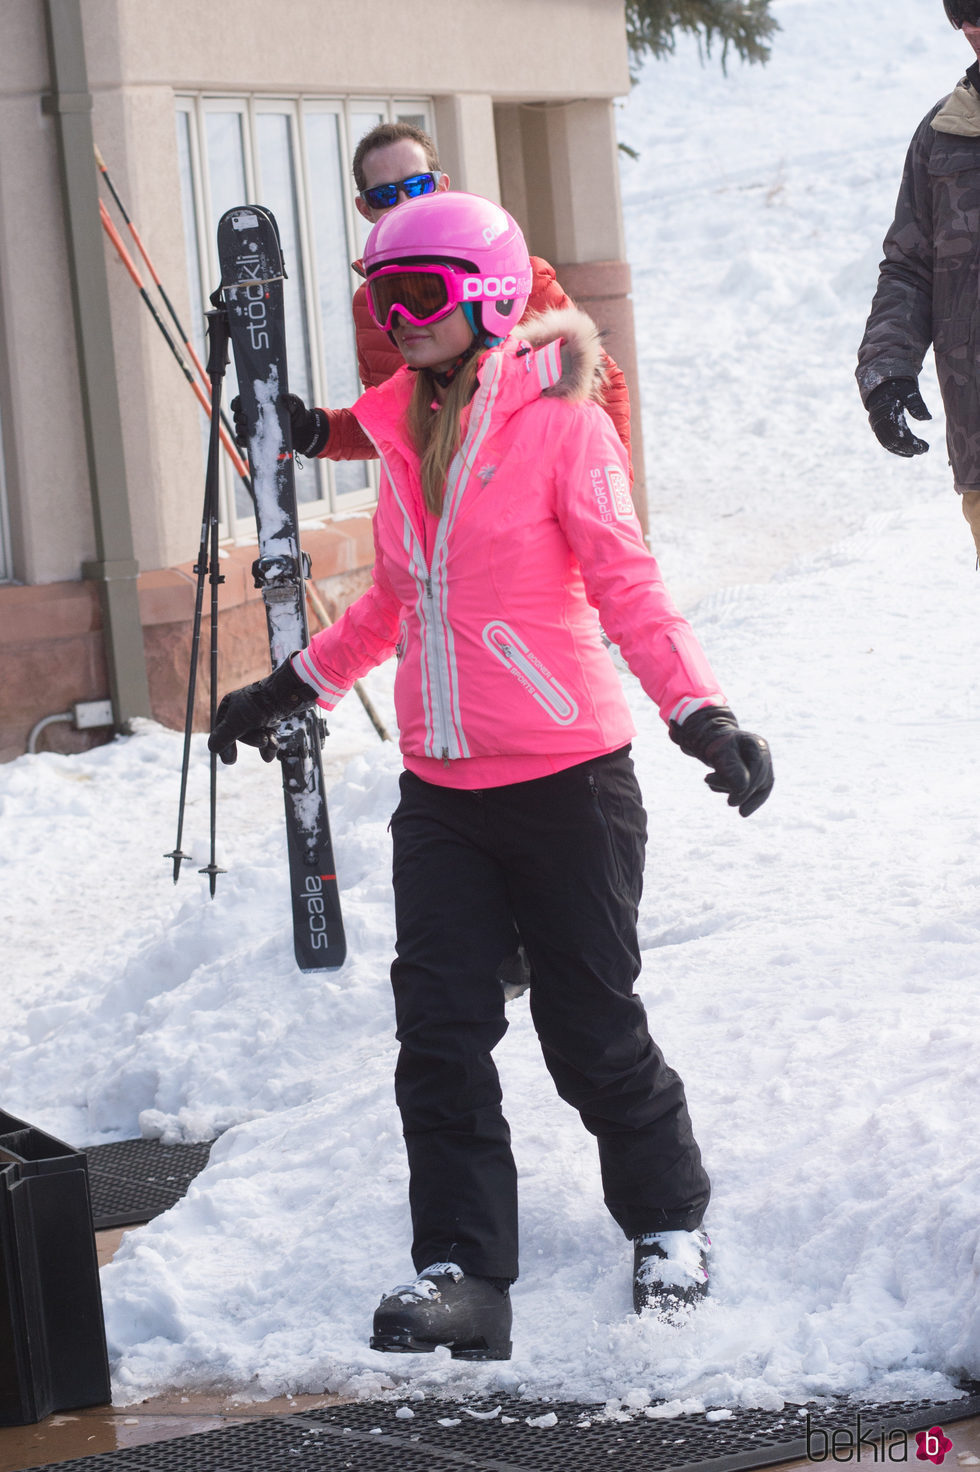 Paris Hilton, en la nieve con su novio